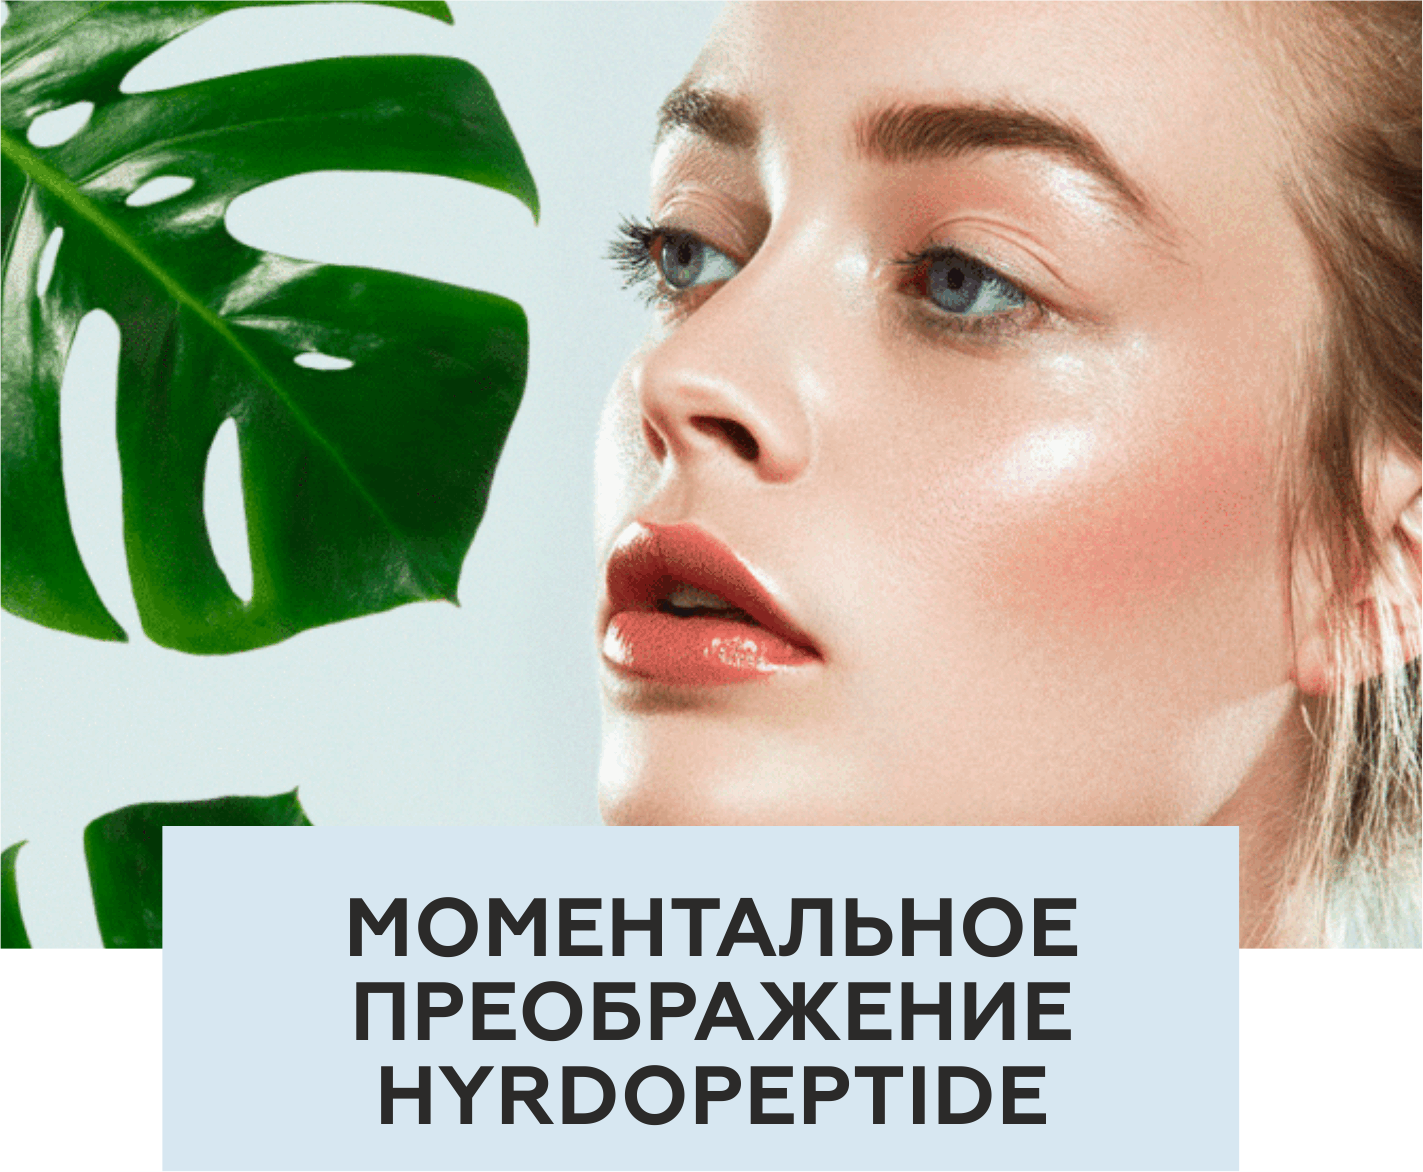 Моментальное преображение Hydropeptide